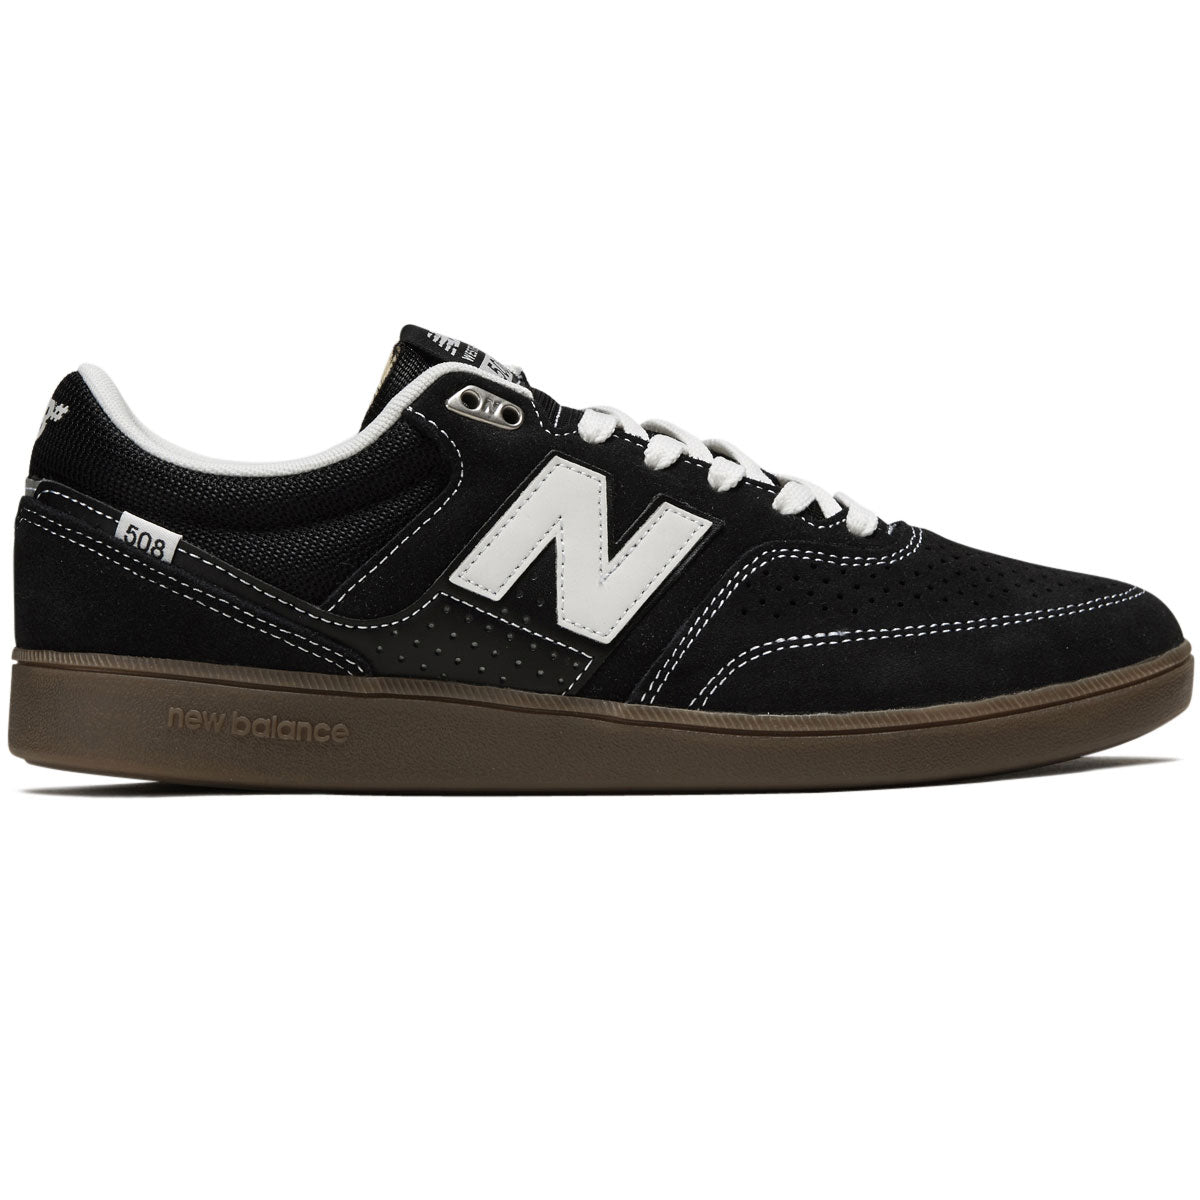 New Balance 508 Westgate Shoes - Black/Gum/White image 1